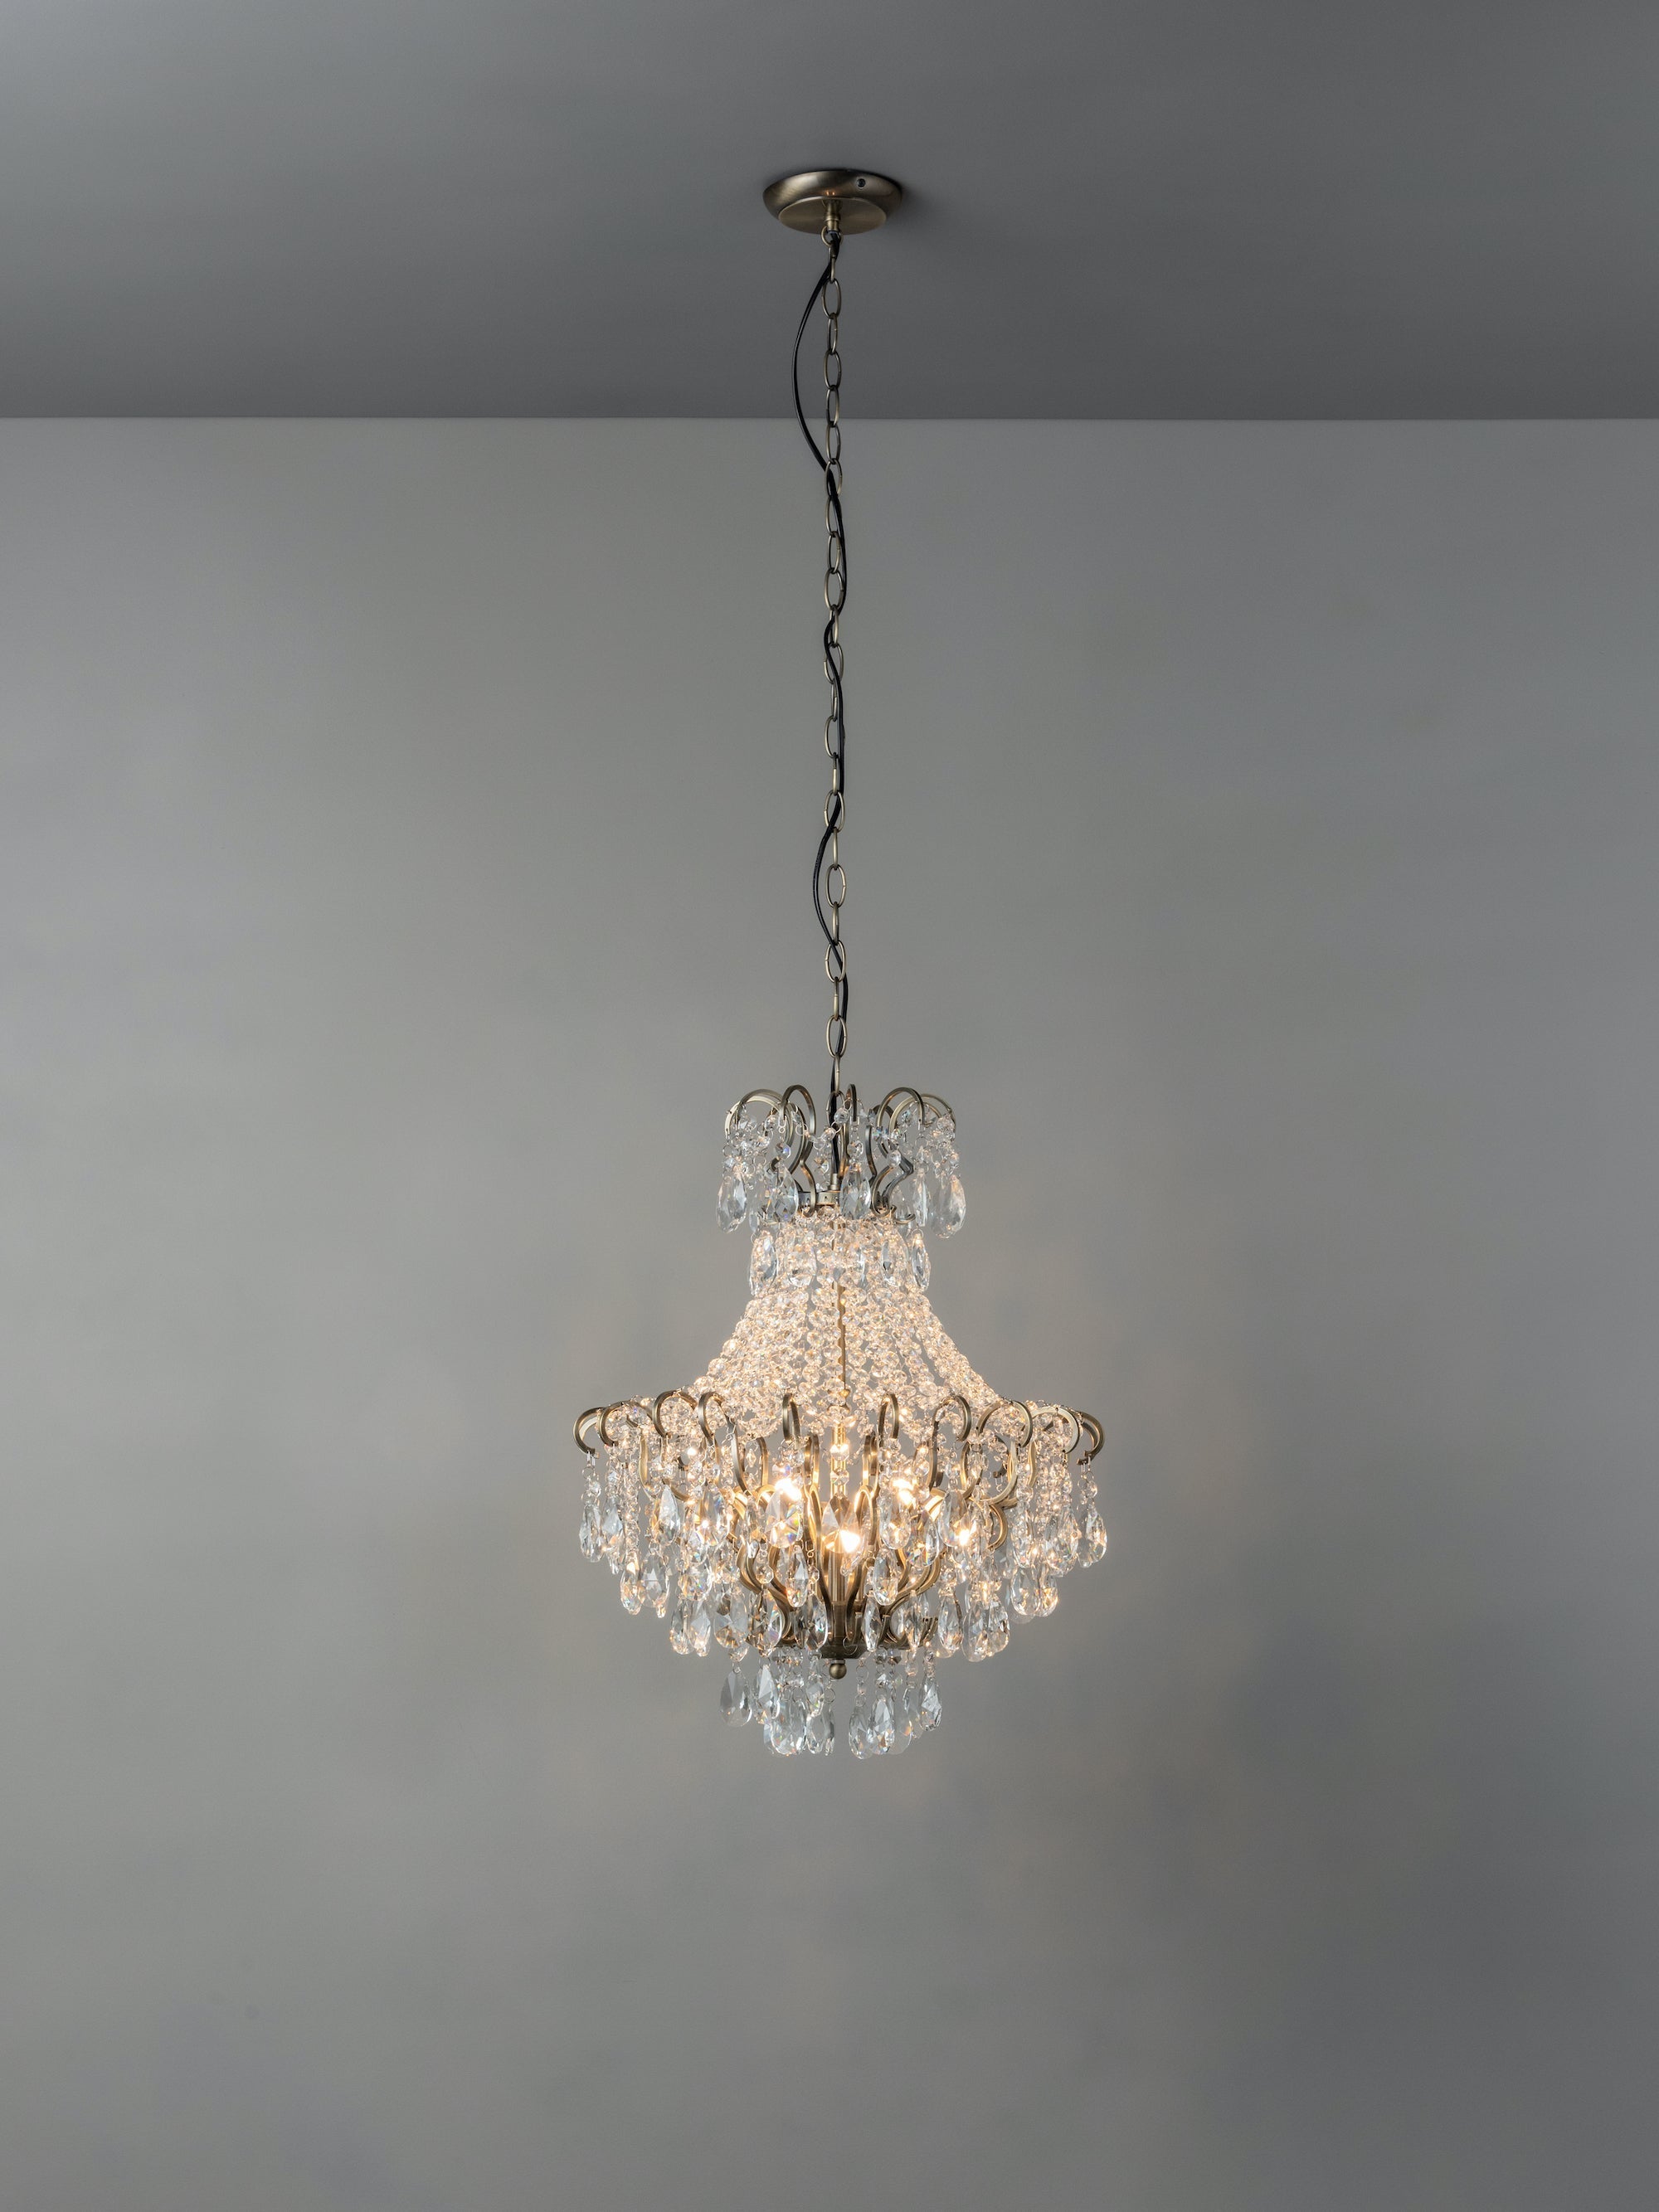 Lina - 4 light antique brass crystal glass chandelier | Ceiling Light | Lights & Lamps Inc | Modern Affordable Designer Lighting | USA